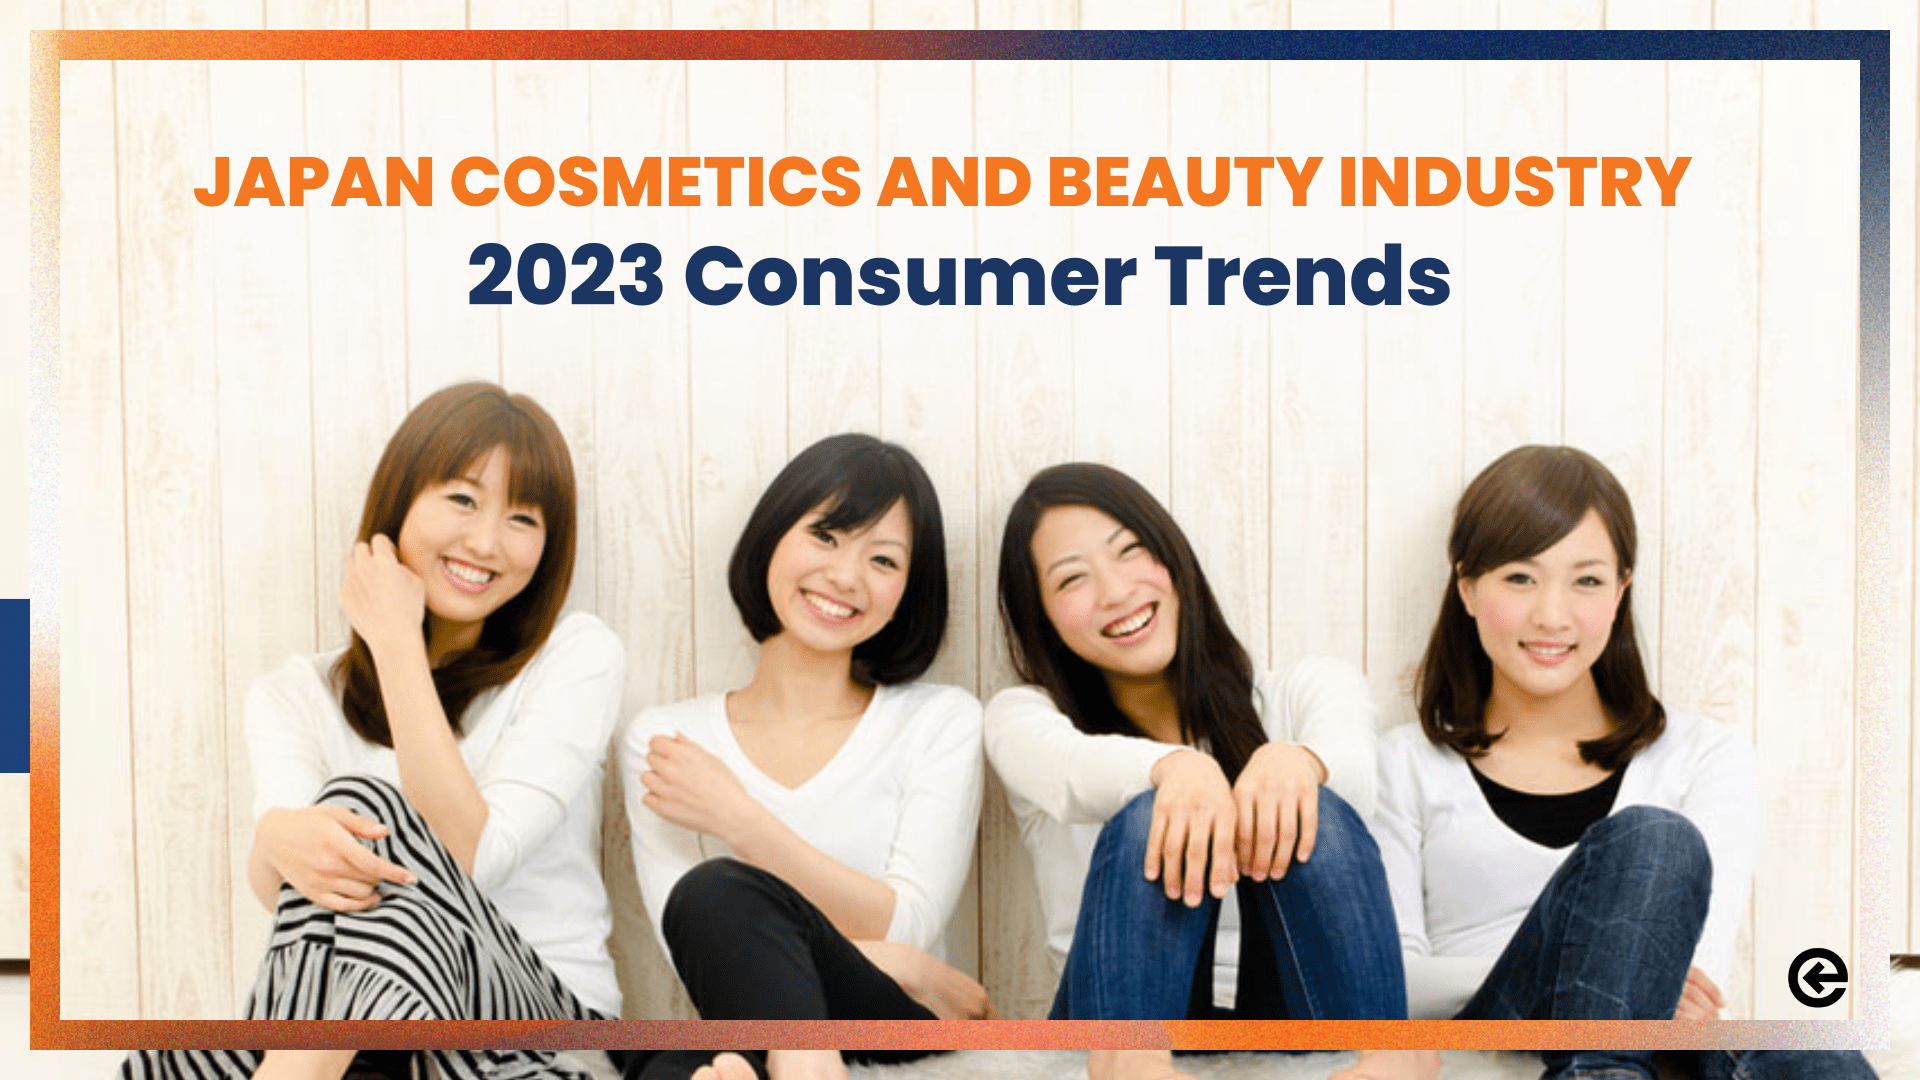 El próspero sector de la cosmética en Japón: Atención a las tendencias de consumo en 2023 